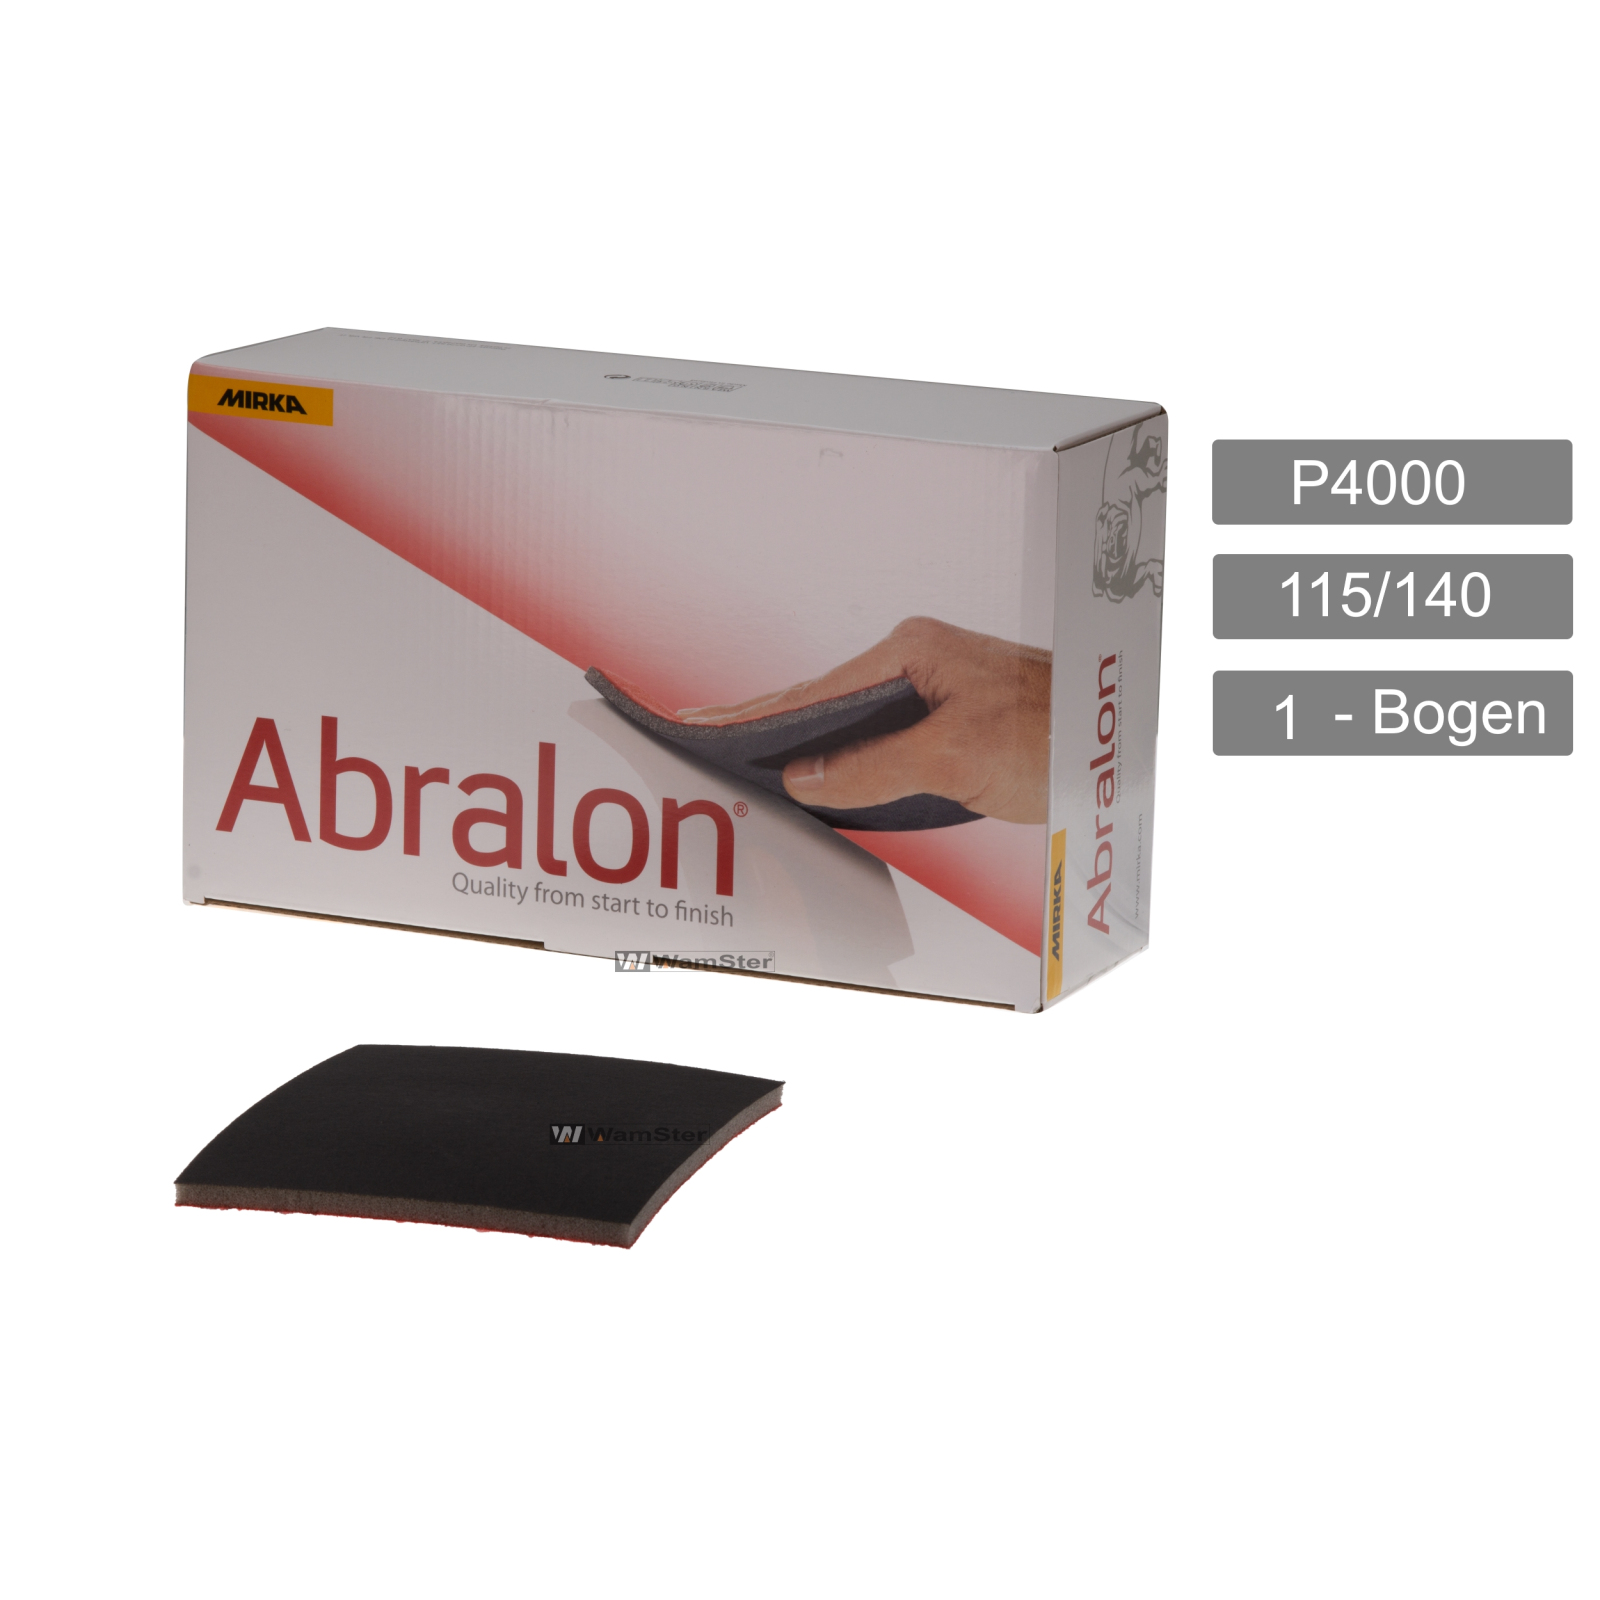 1 x Abralon 115/140 - P 4000 Handpad Schleifpad Vlies